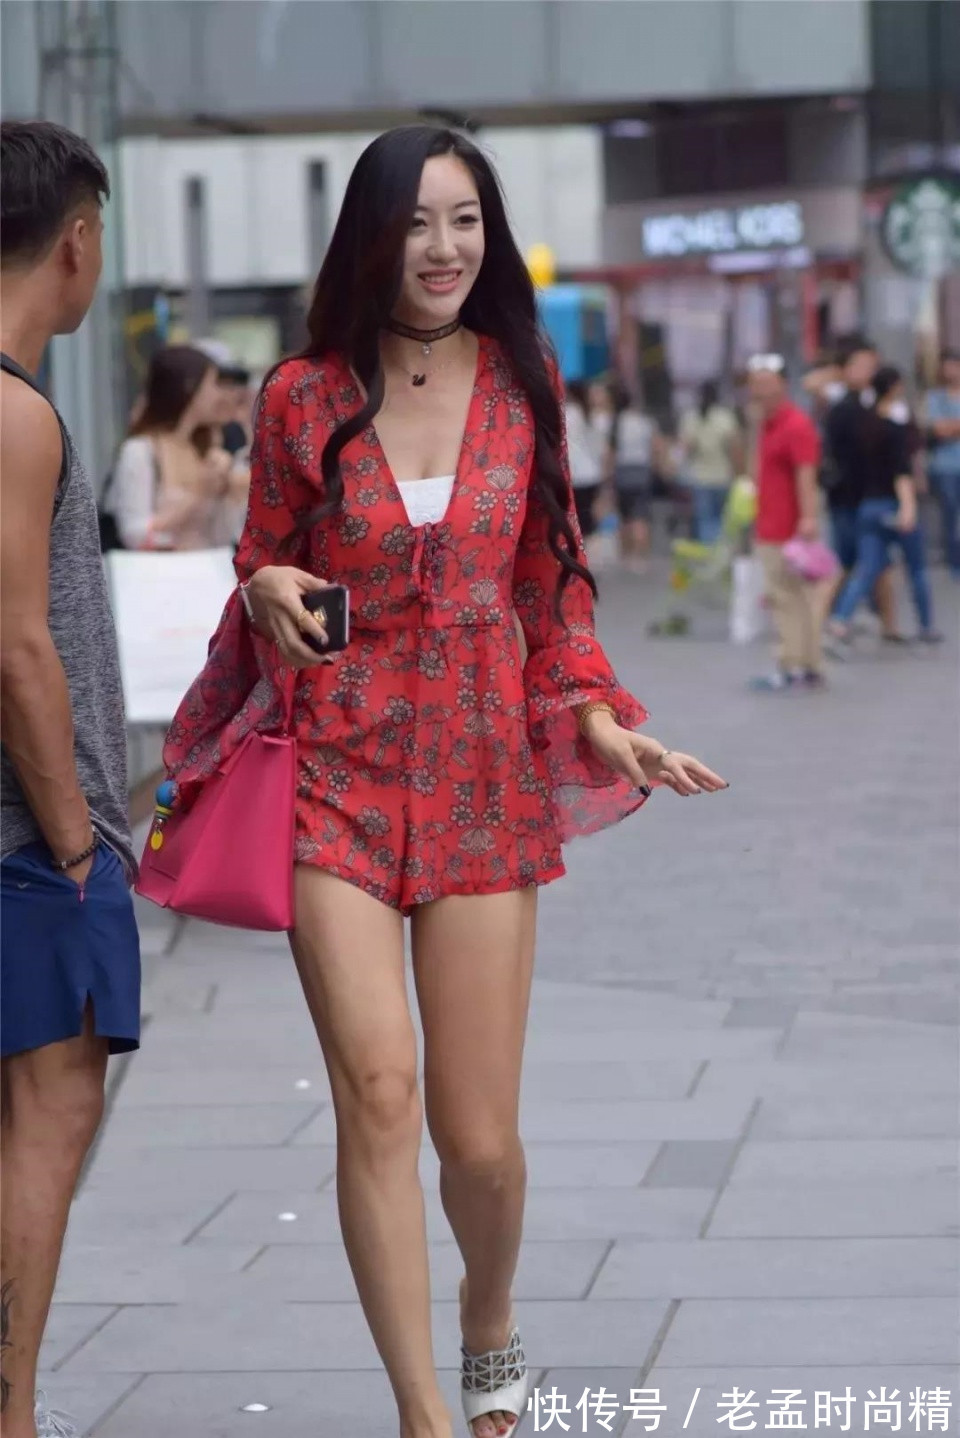 绸缎短裙|街拍: 穿红色绸缎短裙的性感靓丽美妇, 优雅的气质风度翩翩!